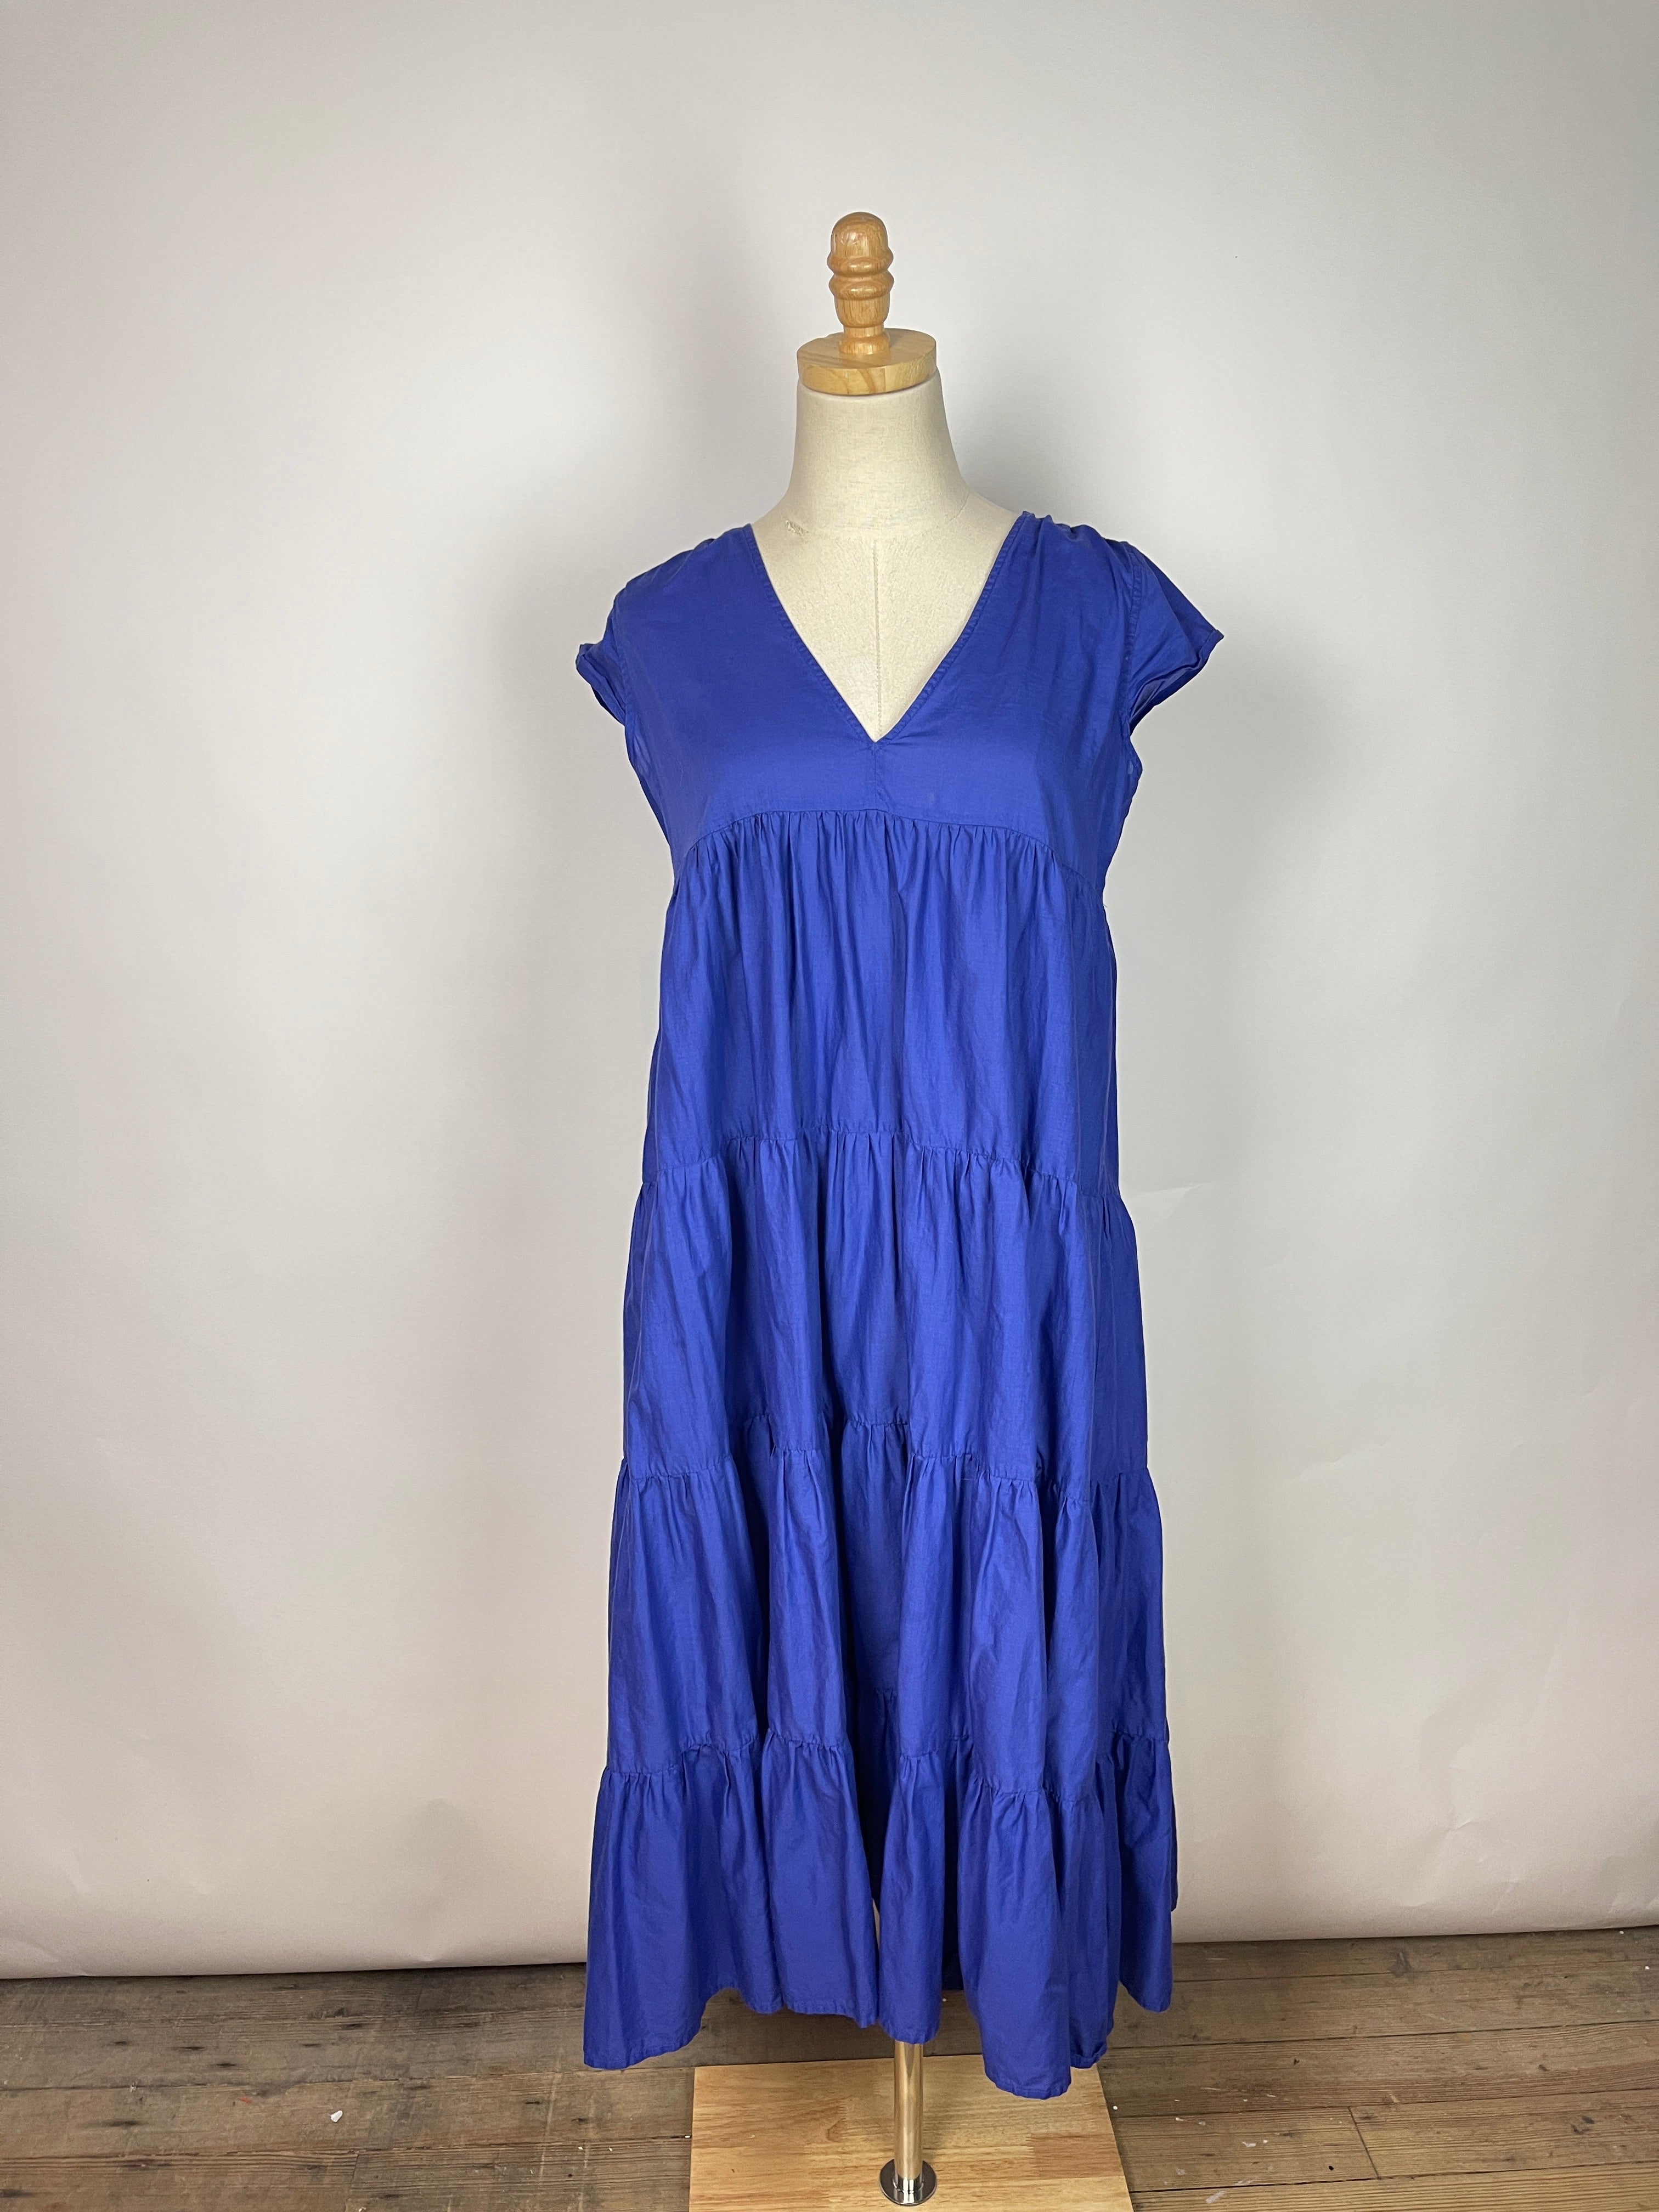 Merlette for Tomorrowland Blue Dress (S)